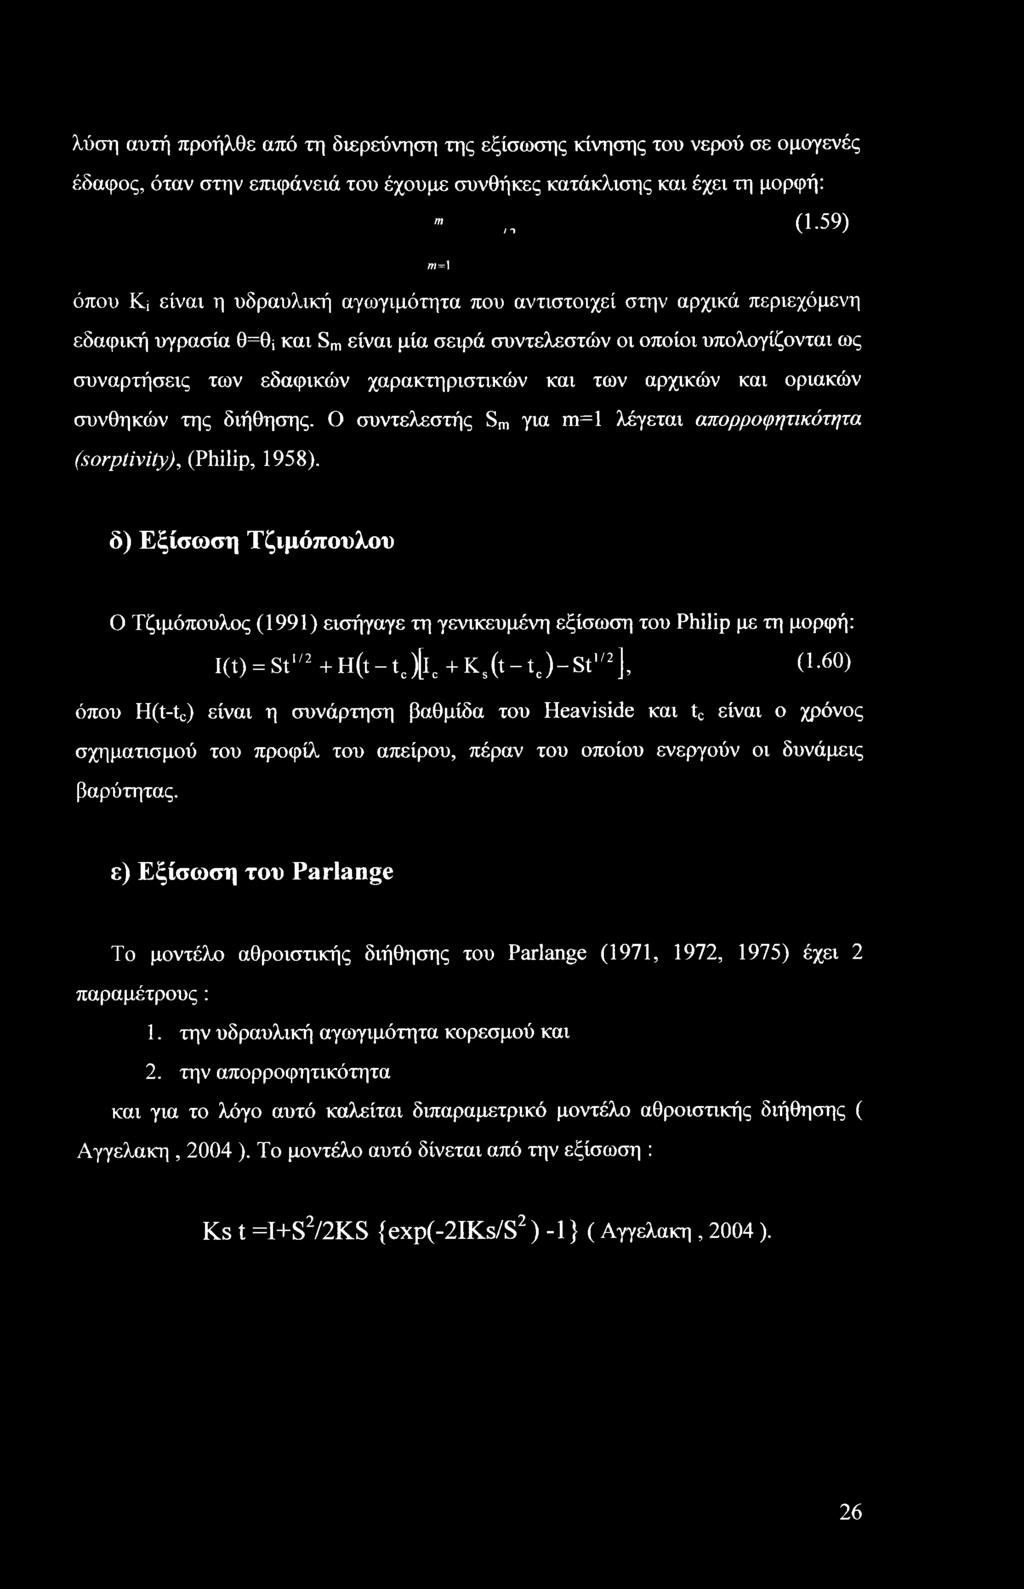 χαρακτηριστικών και των αρχικών και οριακών συνθηκών της διήθησης. Ο συντελεστής Sm για m=l λέγεται απορροφητικότητα (sorptivity), (Philip, 1958).